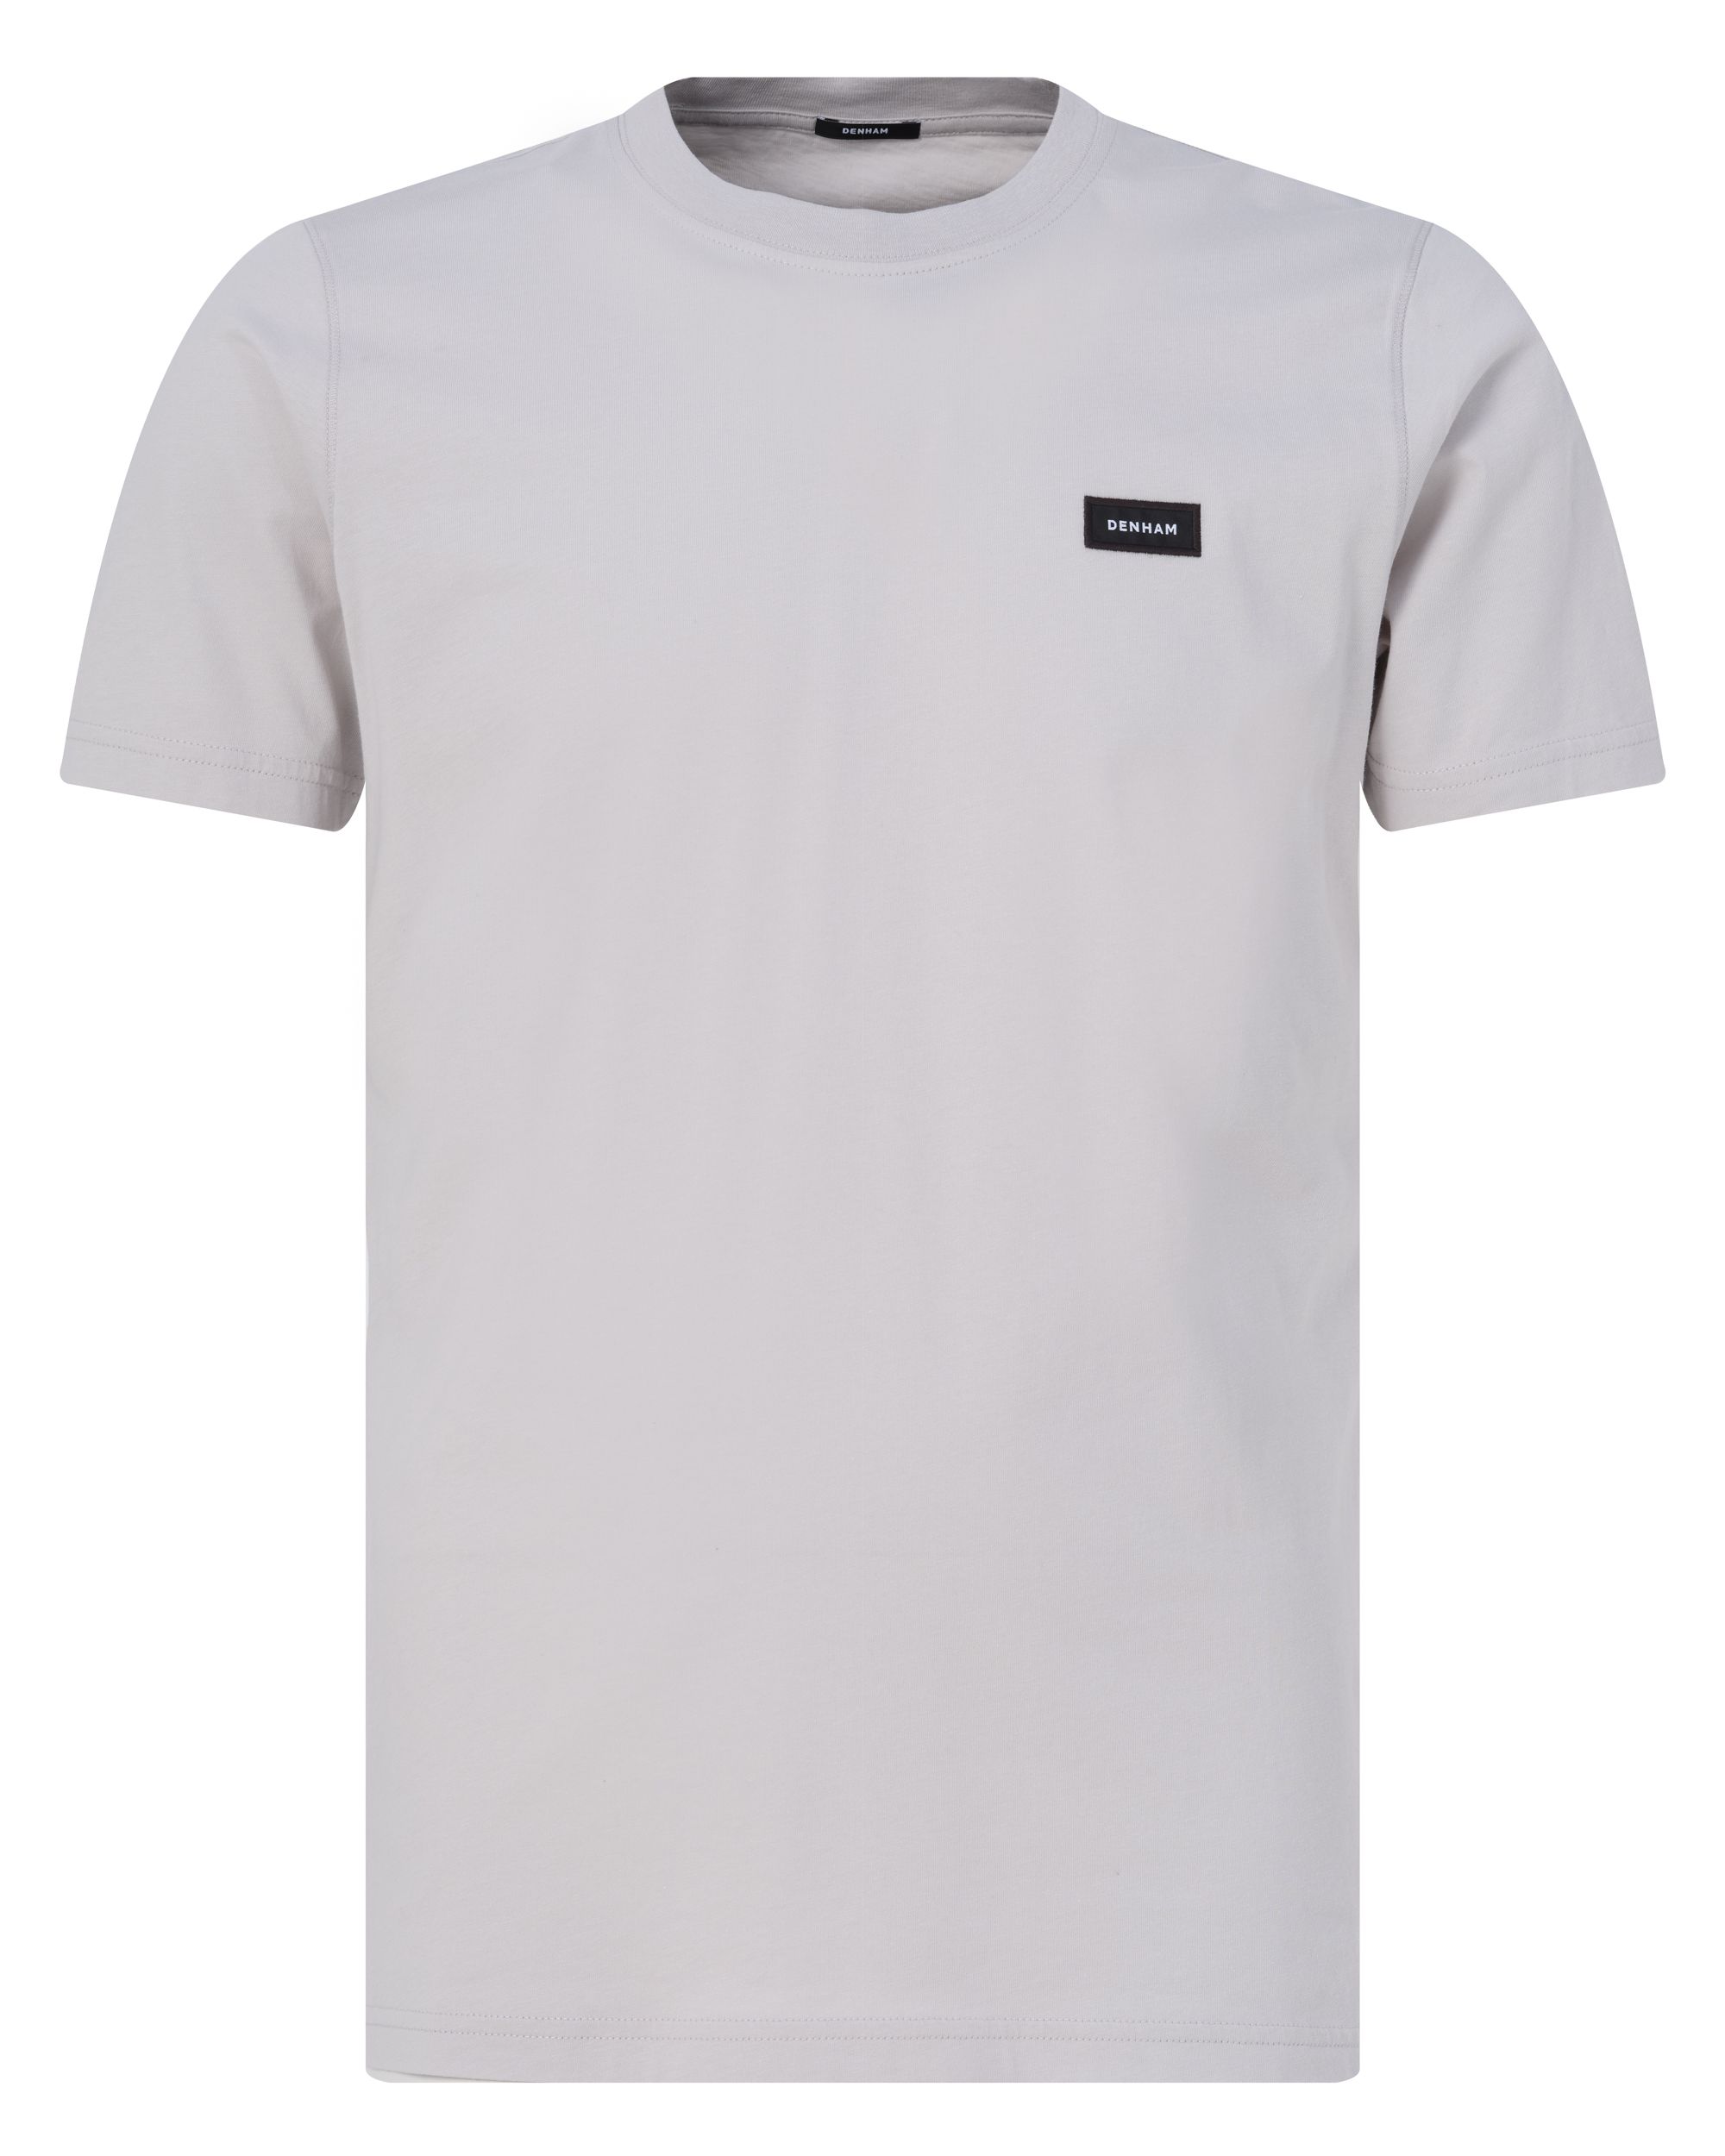 DENHAM Slim T-shirt KM Grijs 089089-001-L